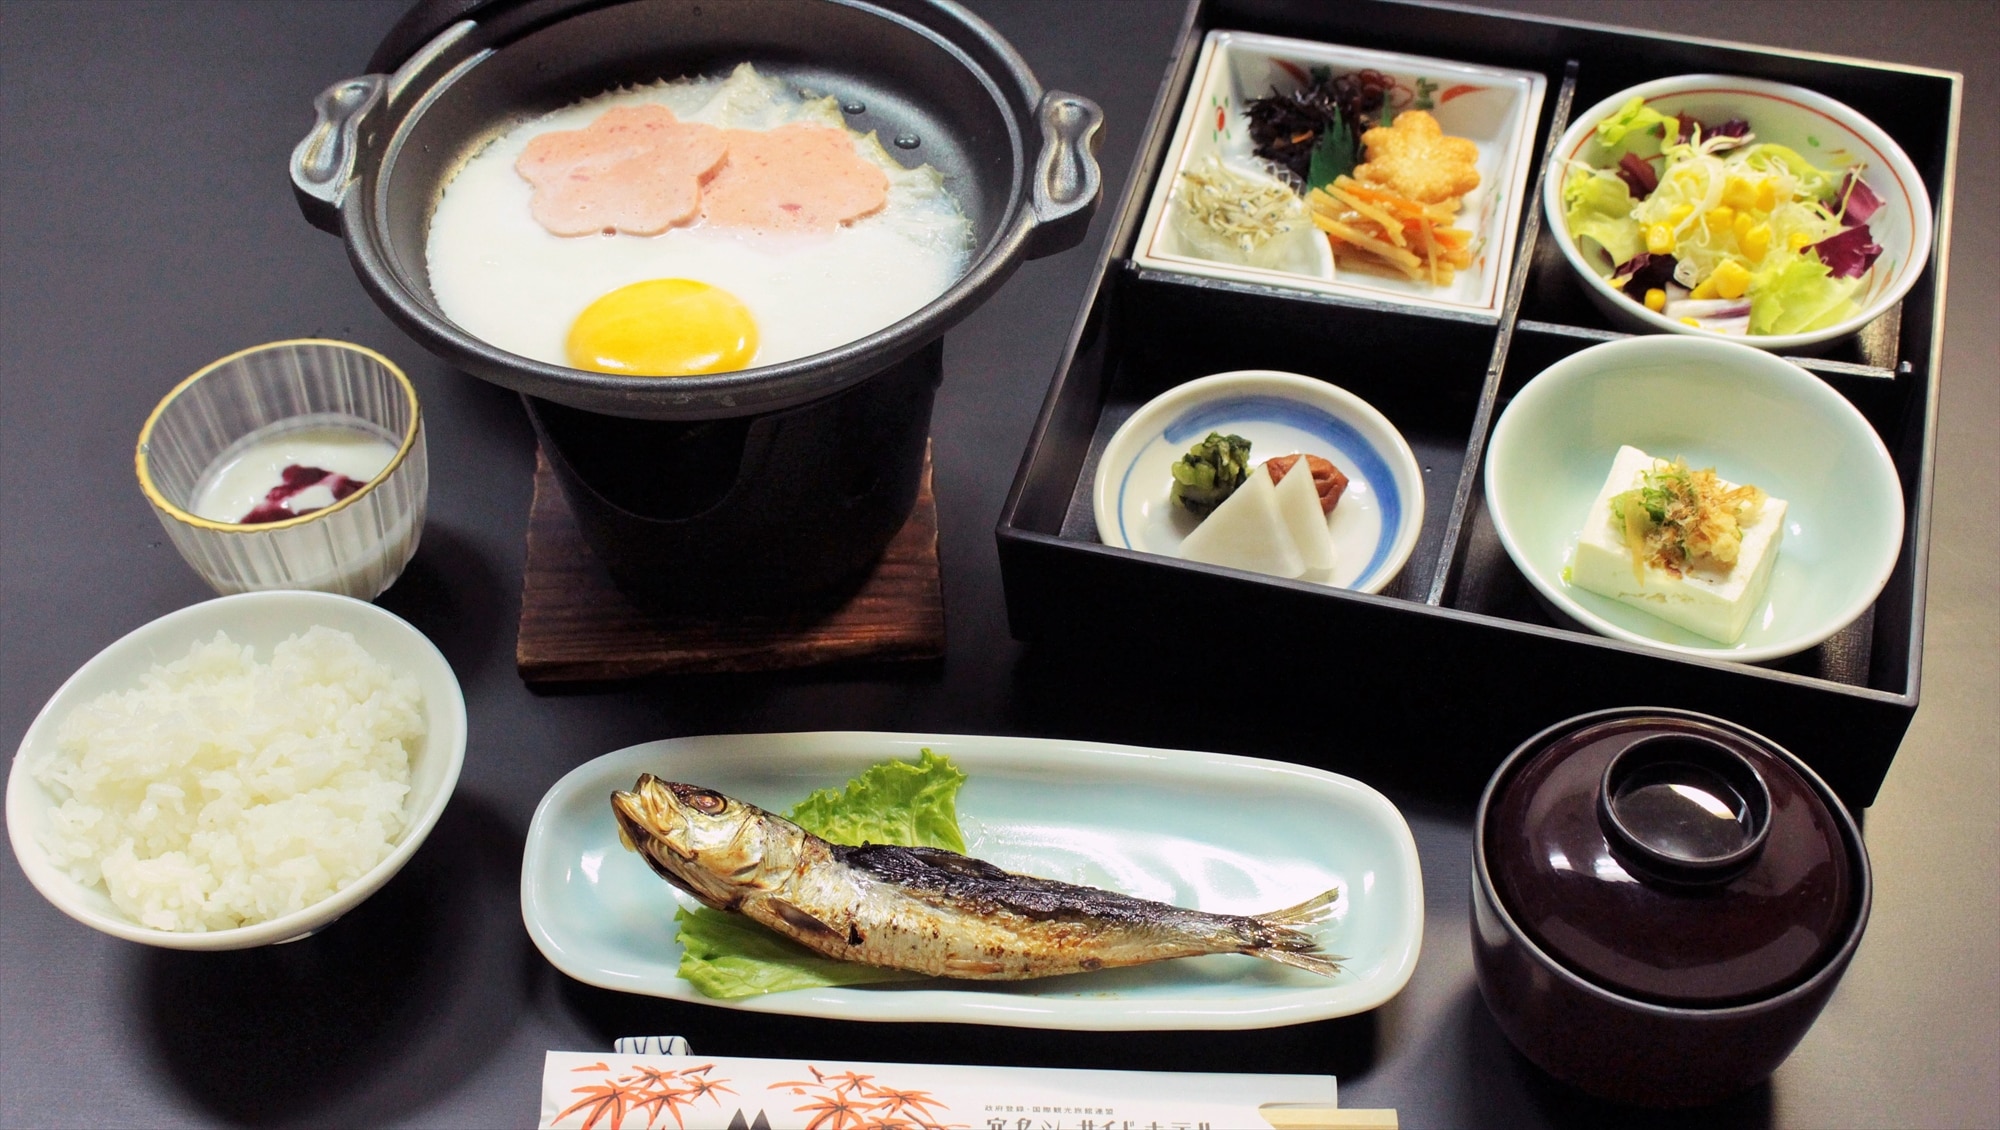 Sarapan adalah makanan set Jepang! Ikan bakar, hidangan telur, tahu, dan sup miso! Sarapan yang sehat!